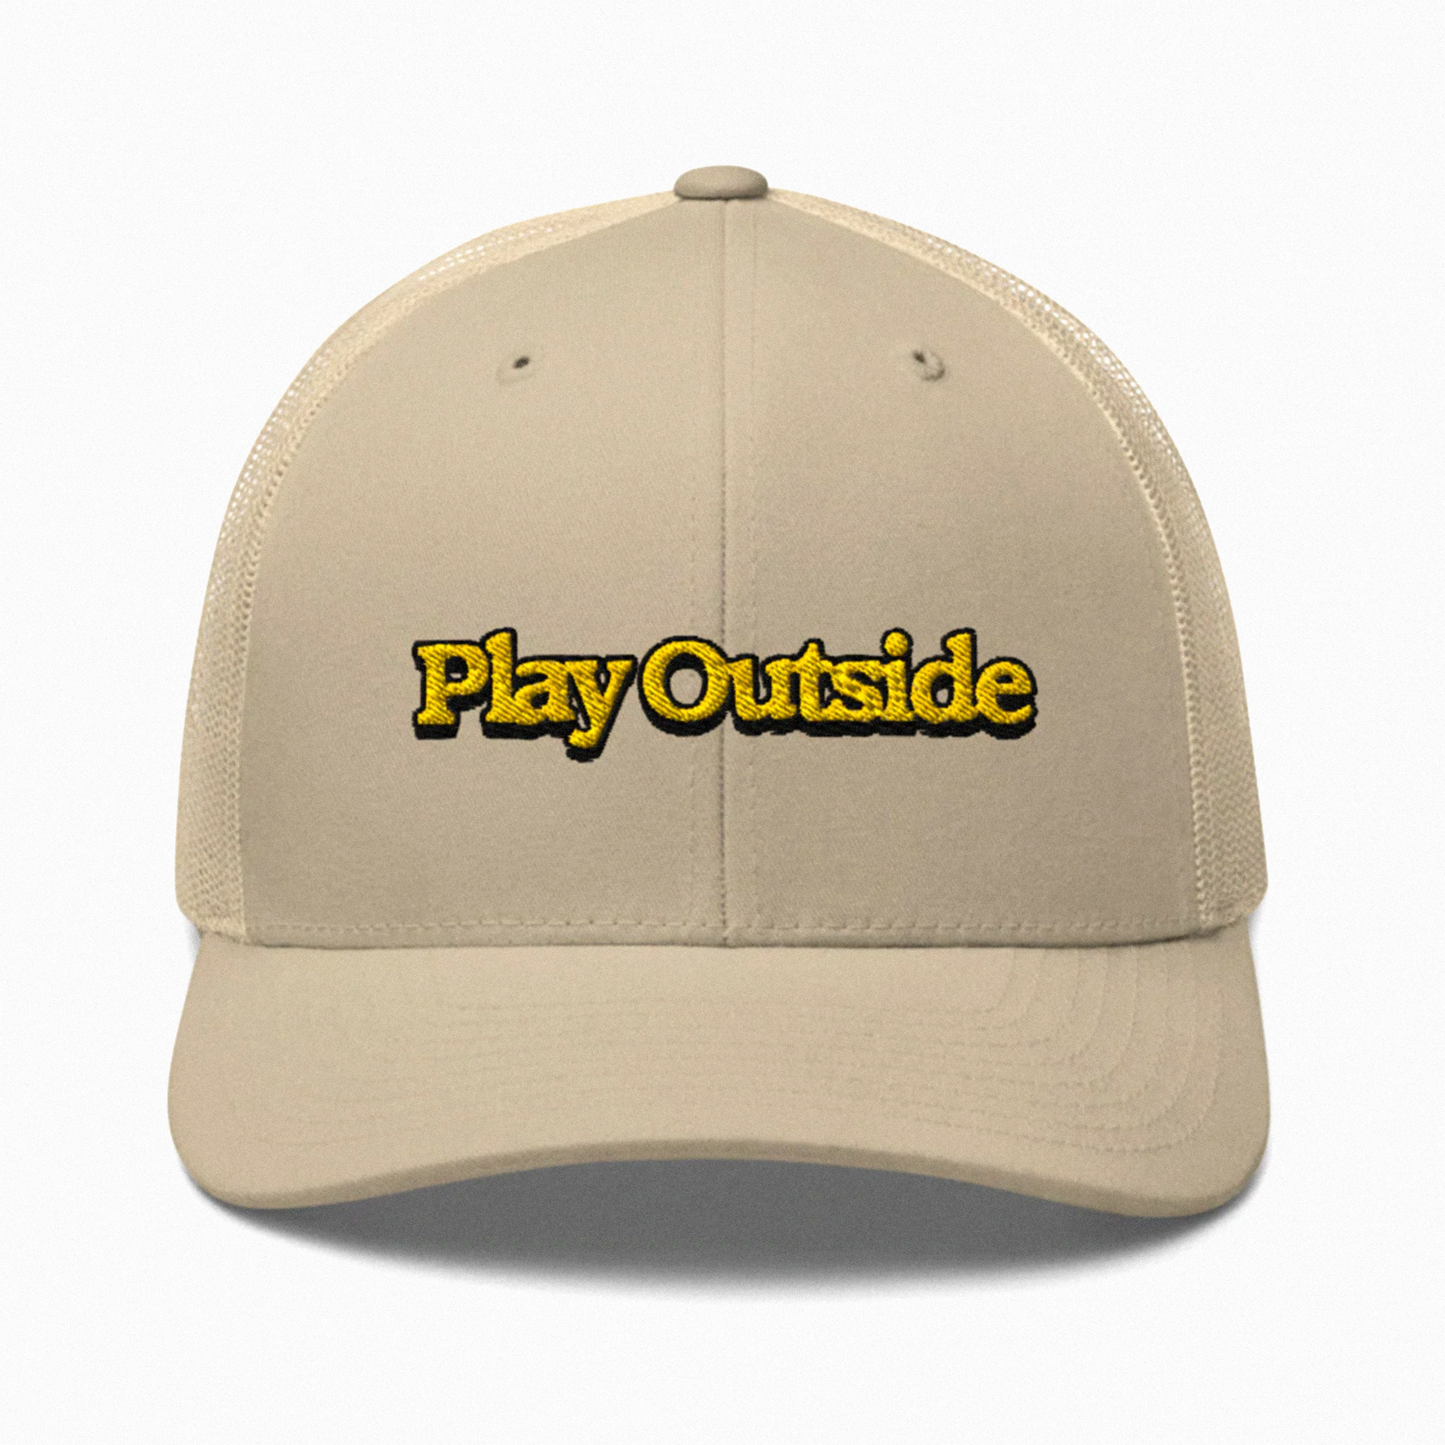 play outside trucker